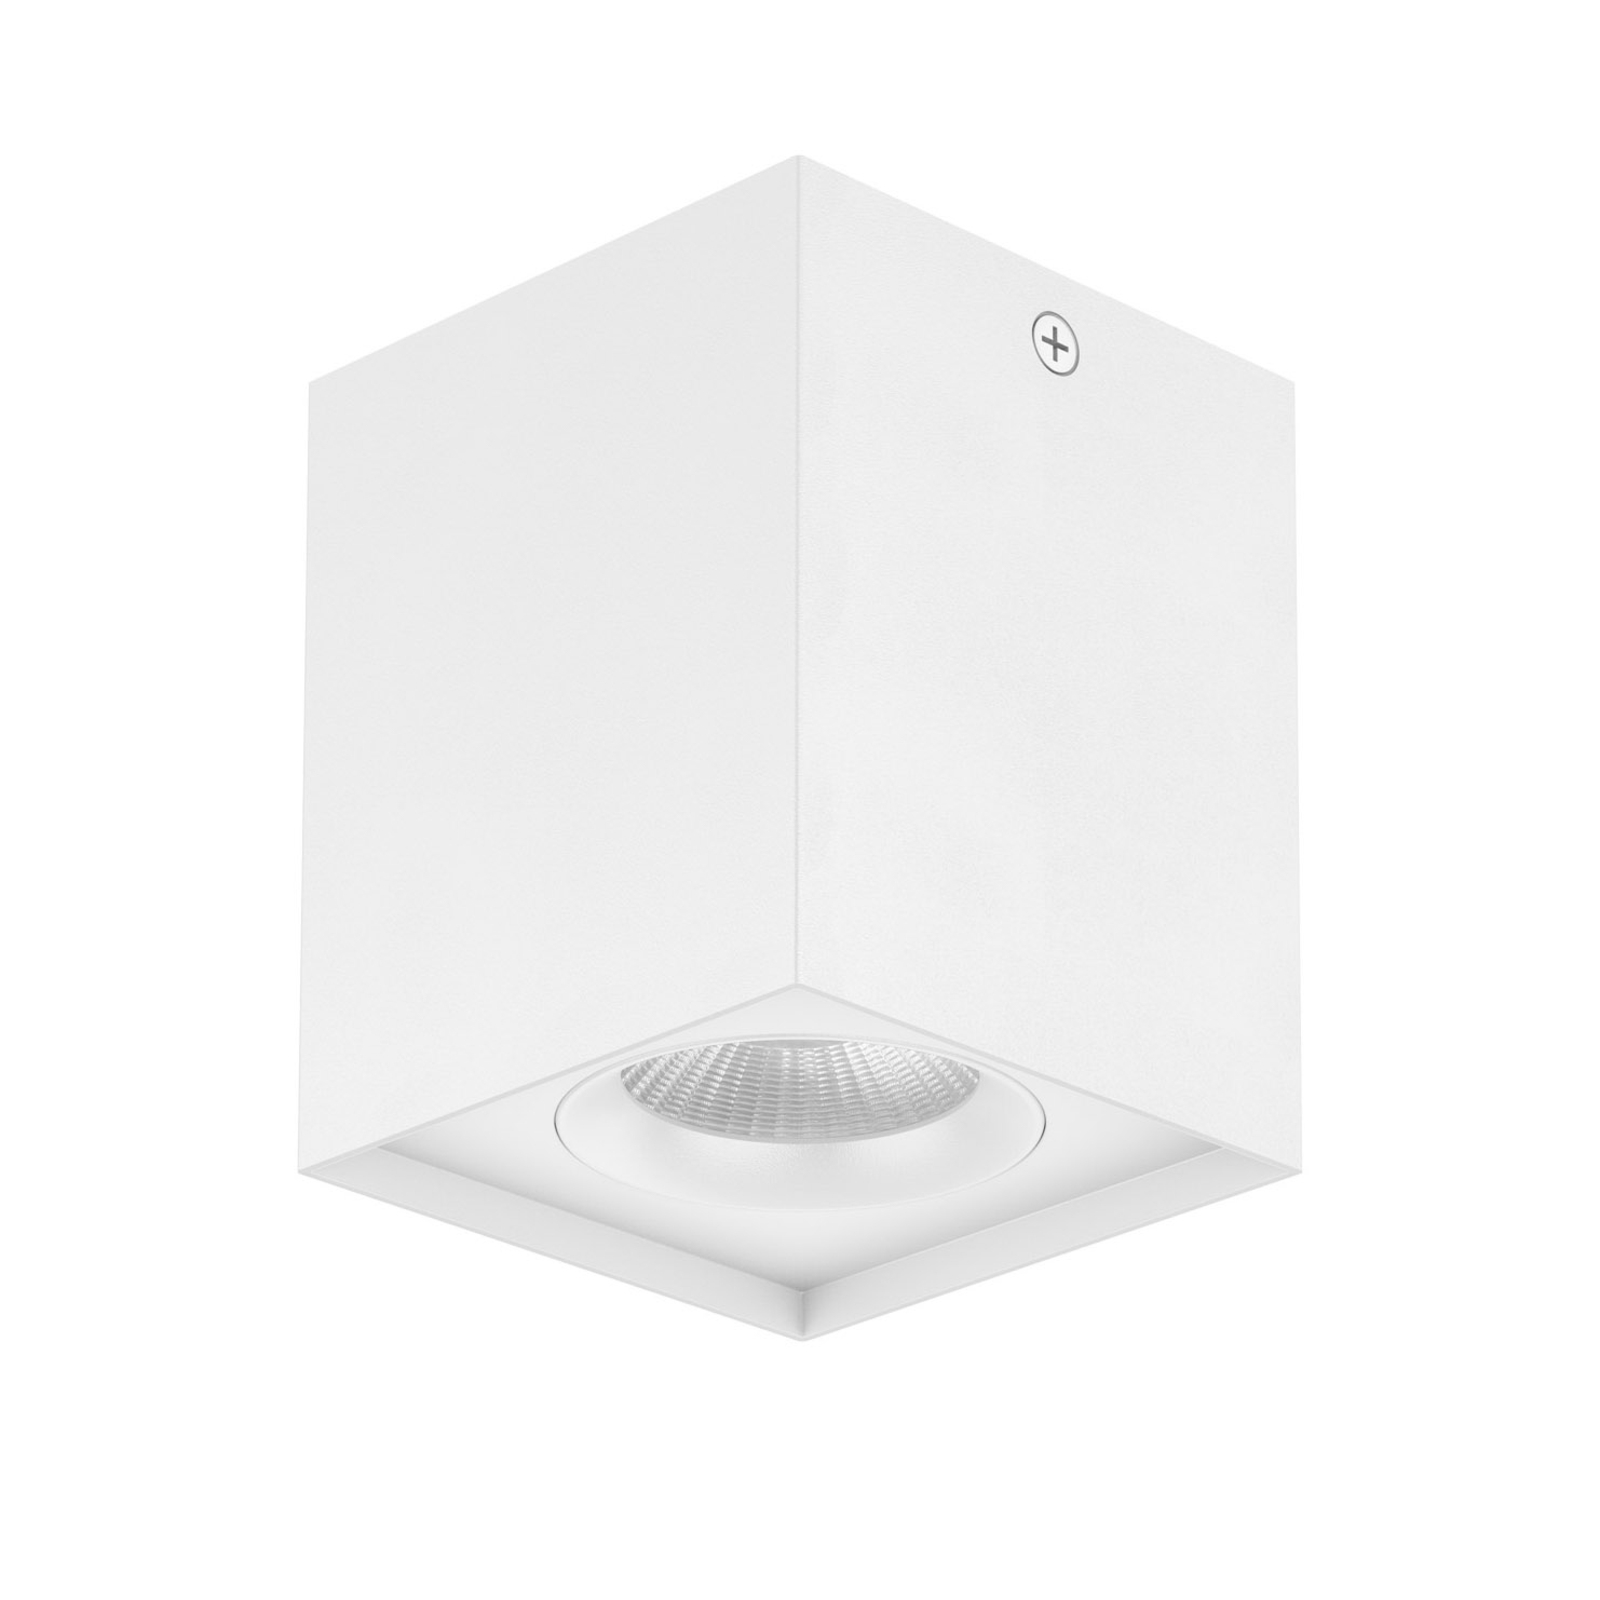 EVN Kardanus LED ceiling light, 9 x 9 cm, white